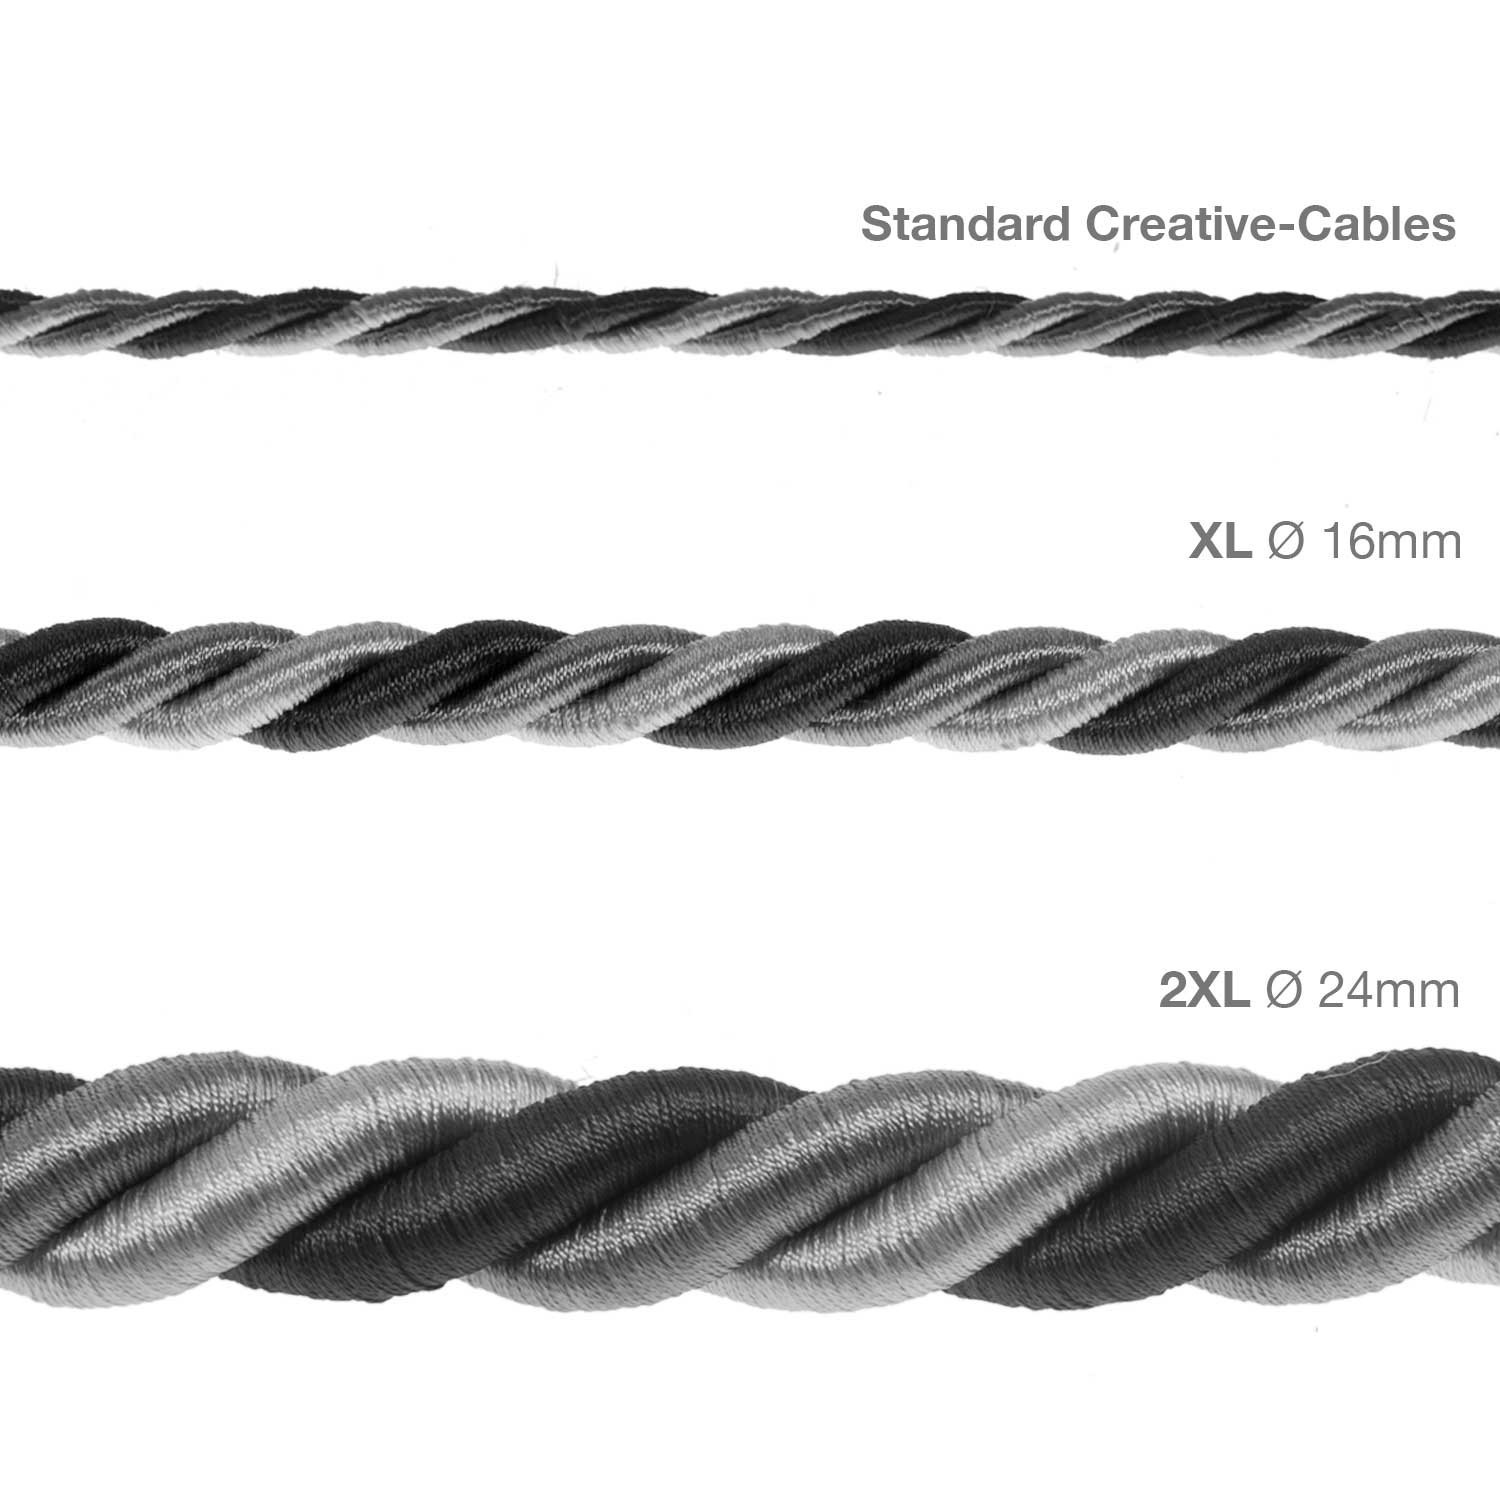 Cordon 2XL, cable eléctrico 3x0,75. Revestimiento de tejido lucído Orleans. Diámetro: 24mm.